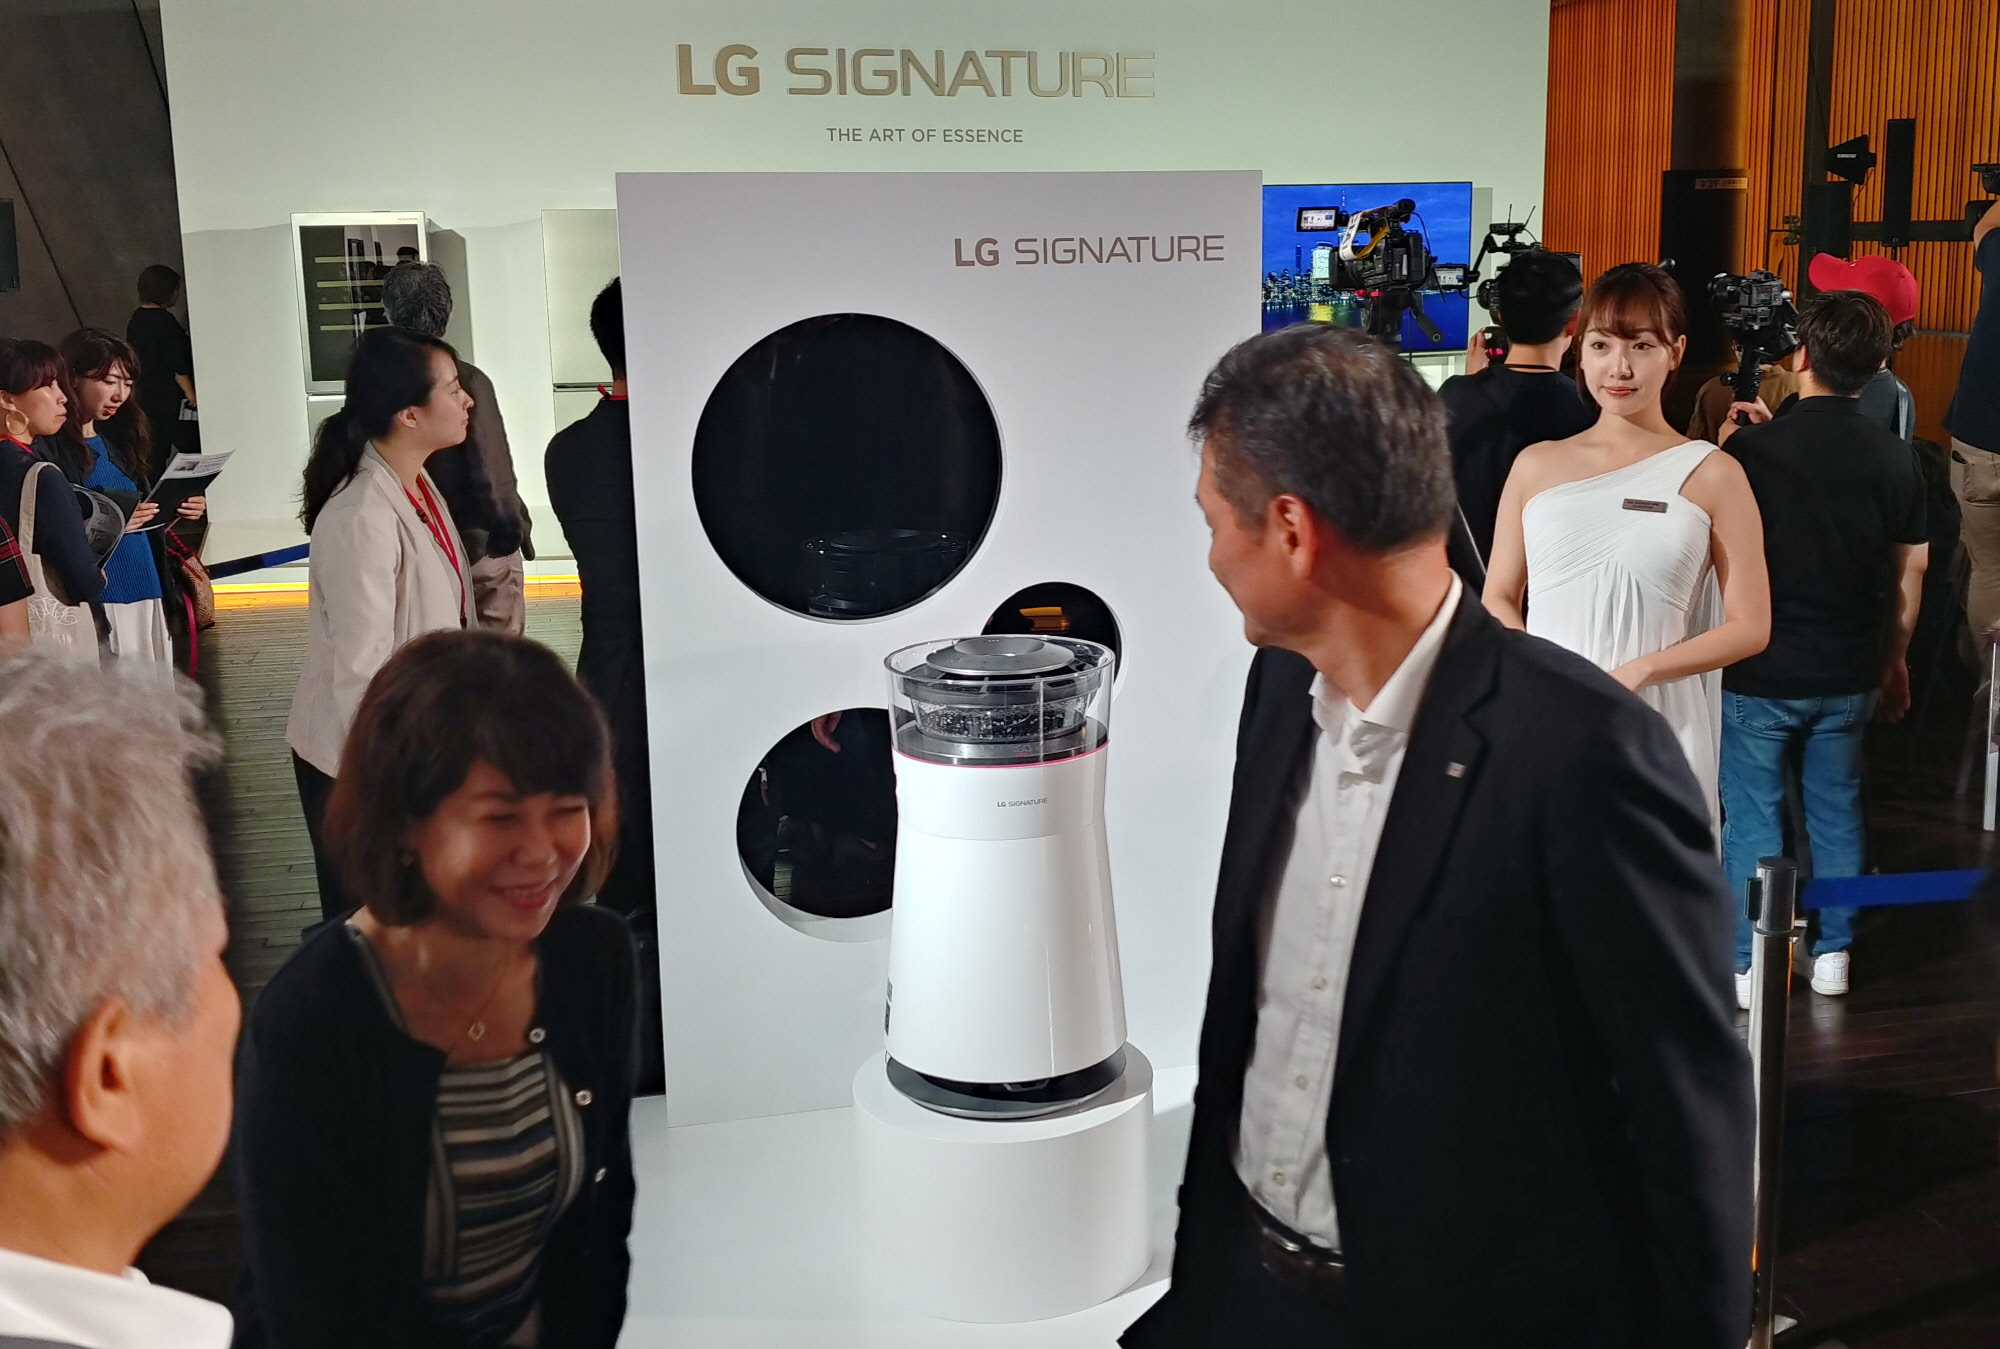 LG전자가 4일 일본 도쿄 국립신미술관에서 현지 거래선, 기자, 오피니언 리더 등 약 250 명을 초청해 ‘LG 시그니처’ 출시행사를 열었다. 참석자들이 초프리미엄 'LG 시그니처'를 살펴보고 있다. 